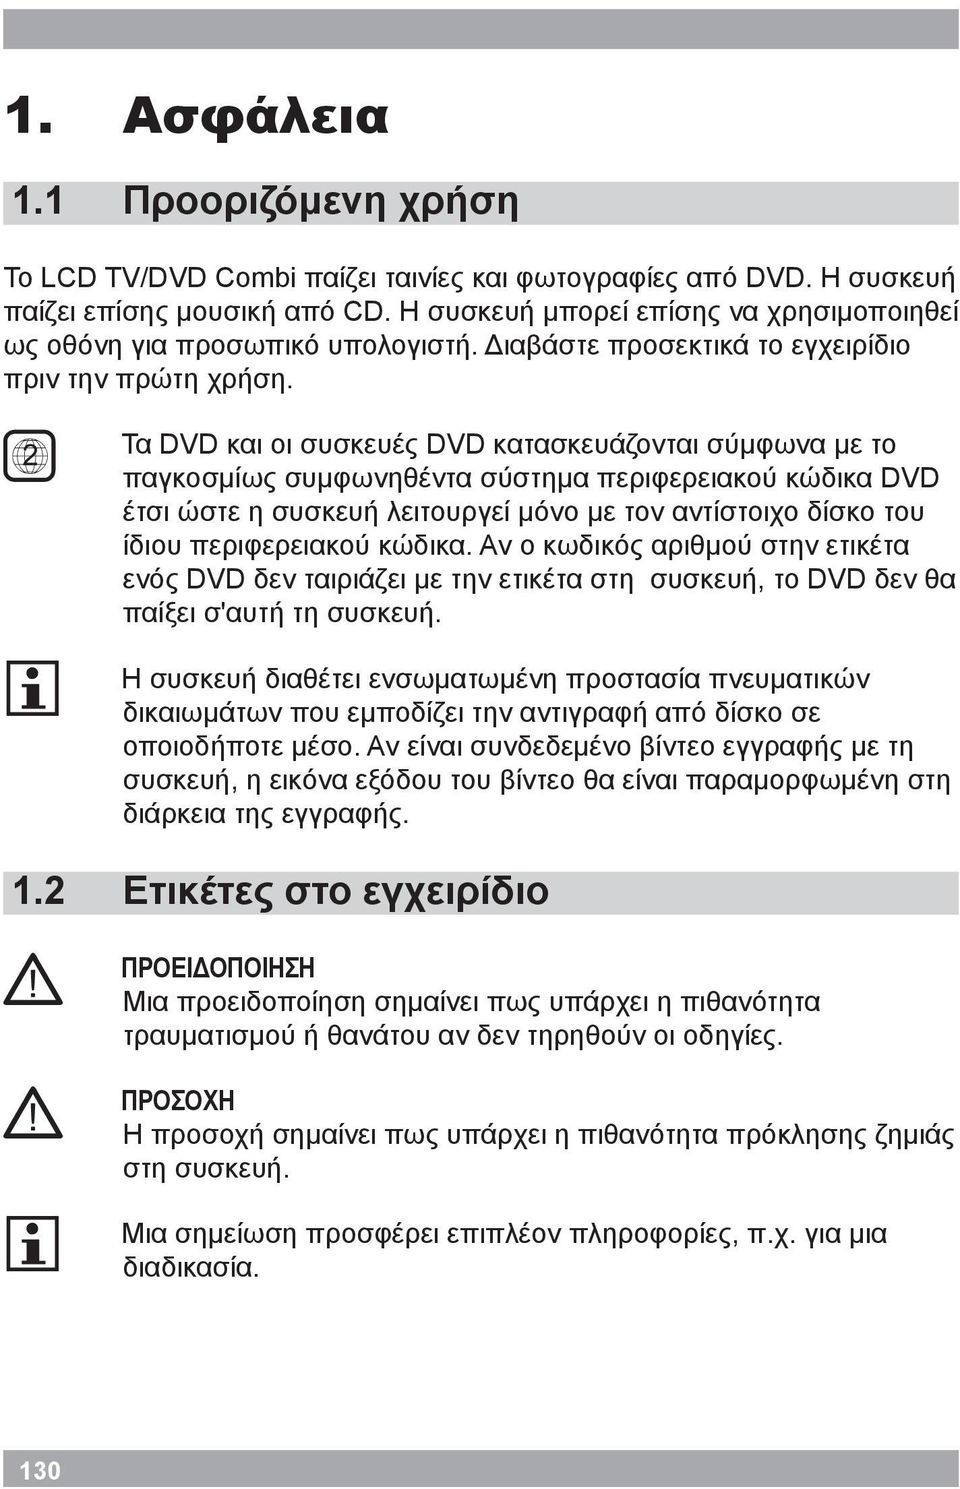 2 Τα DVD και οι συσκευές DVD κατασκευάζονται σύμφωνα με το παγκοσμίως συμφωνηθέντα σύστημα περιφερειακού κώδικα DVD έτσι ώστε η συσκευή λειτουργεί μόνο με τον αντίστοιχο δίσκο του ίδιου περιφερειακού